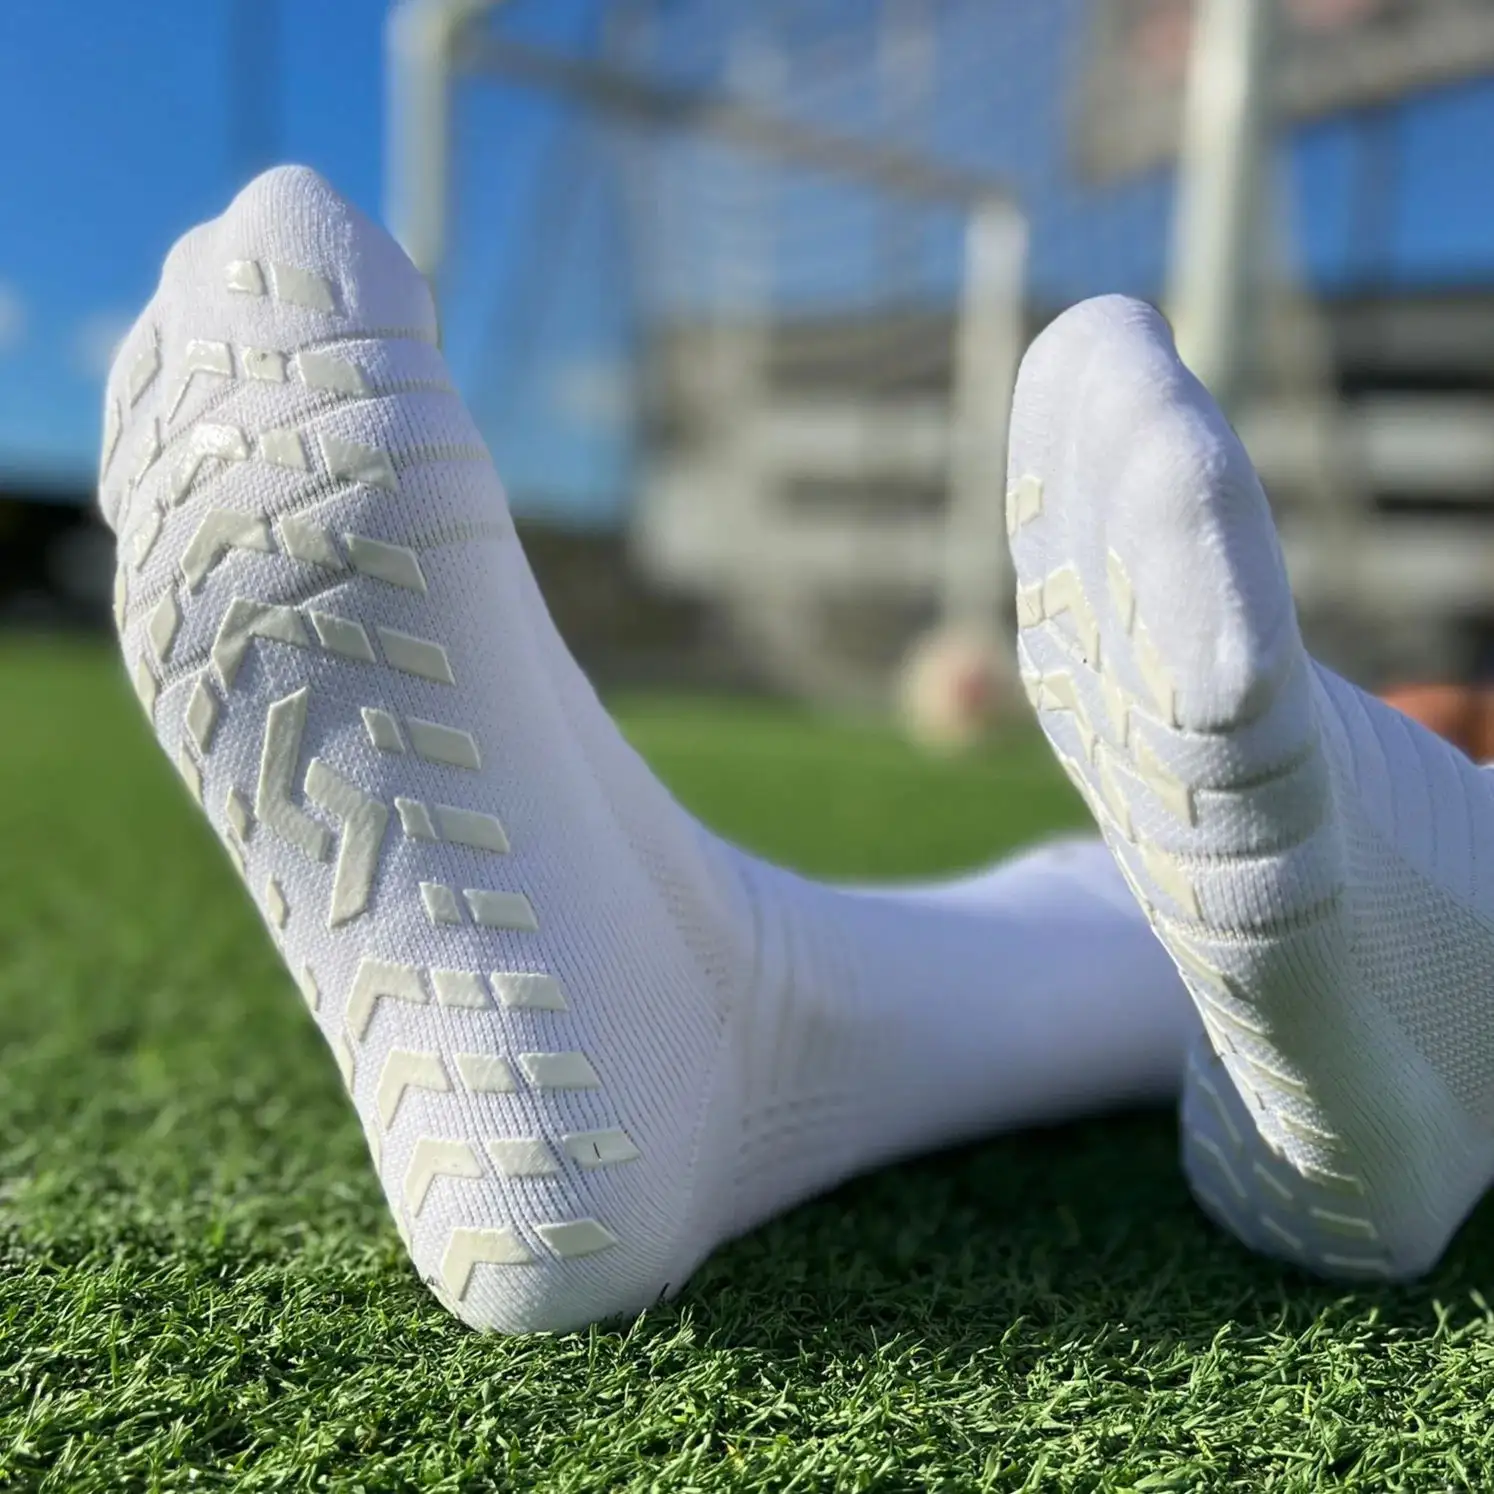 Popular Custom Soccer grip socks for men and women wear-resistant anti slip football Socks lowest order quantity crew socks